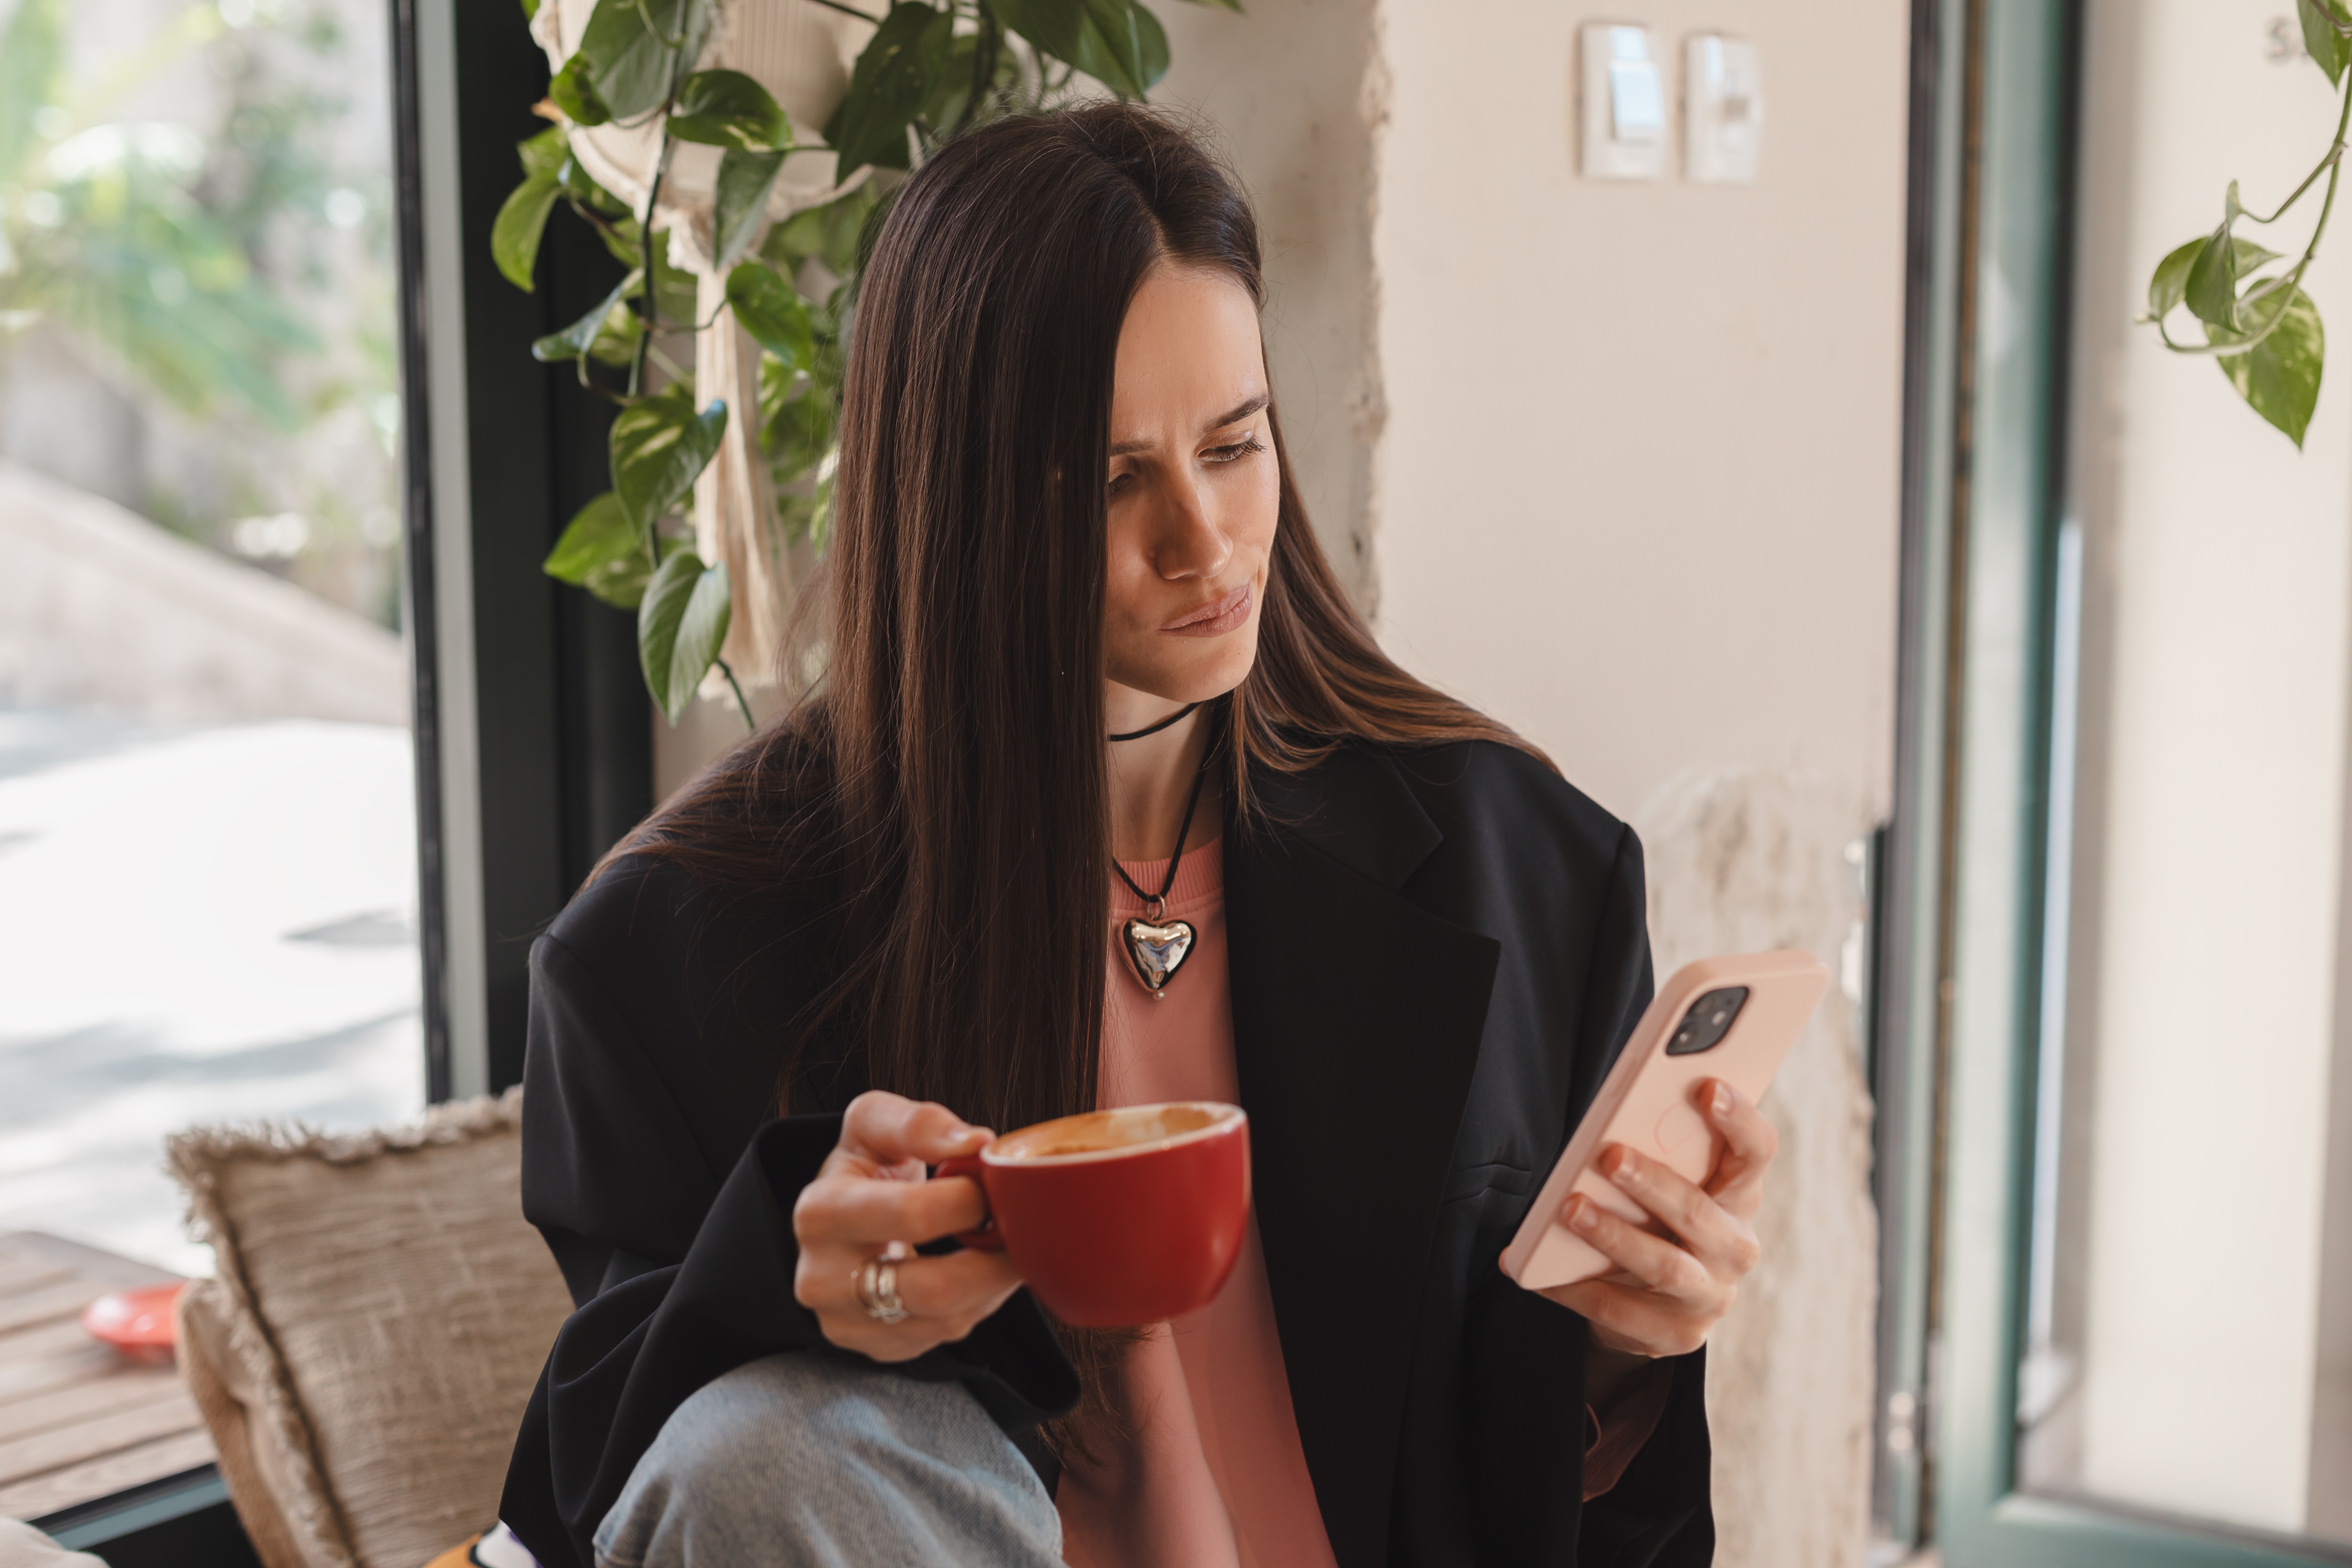 Eine Frau, die ihr Telefon benutzt, während sie eine Tasse Kaffee hält | Quelle: Shutterstock